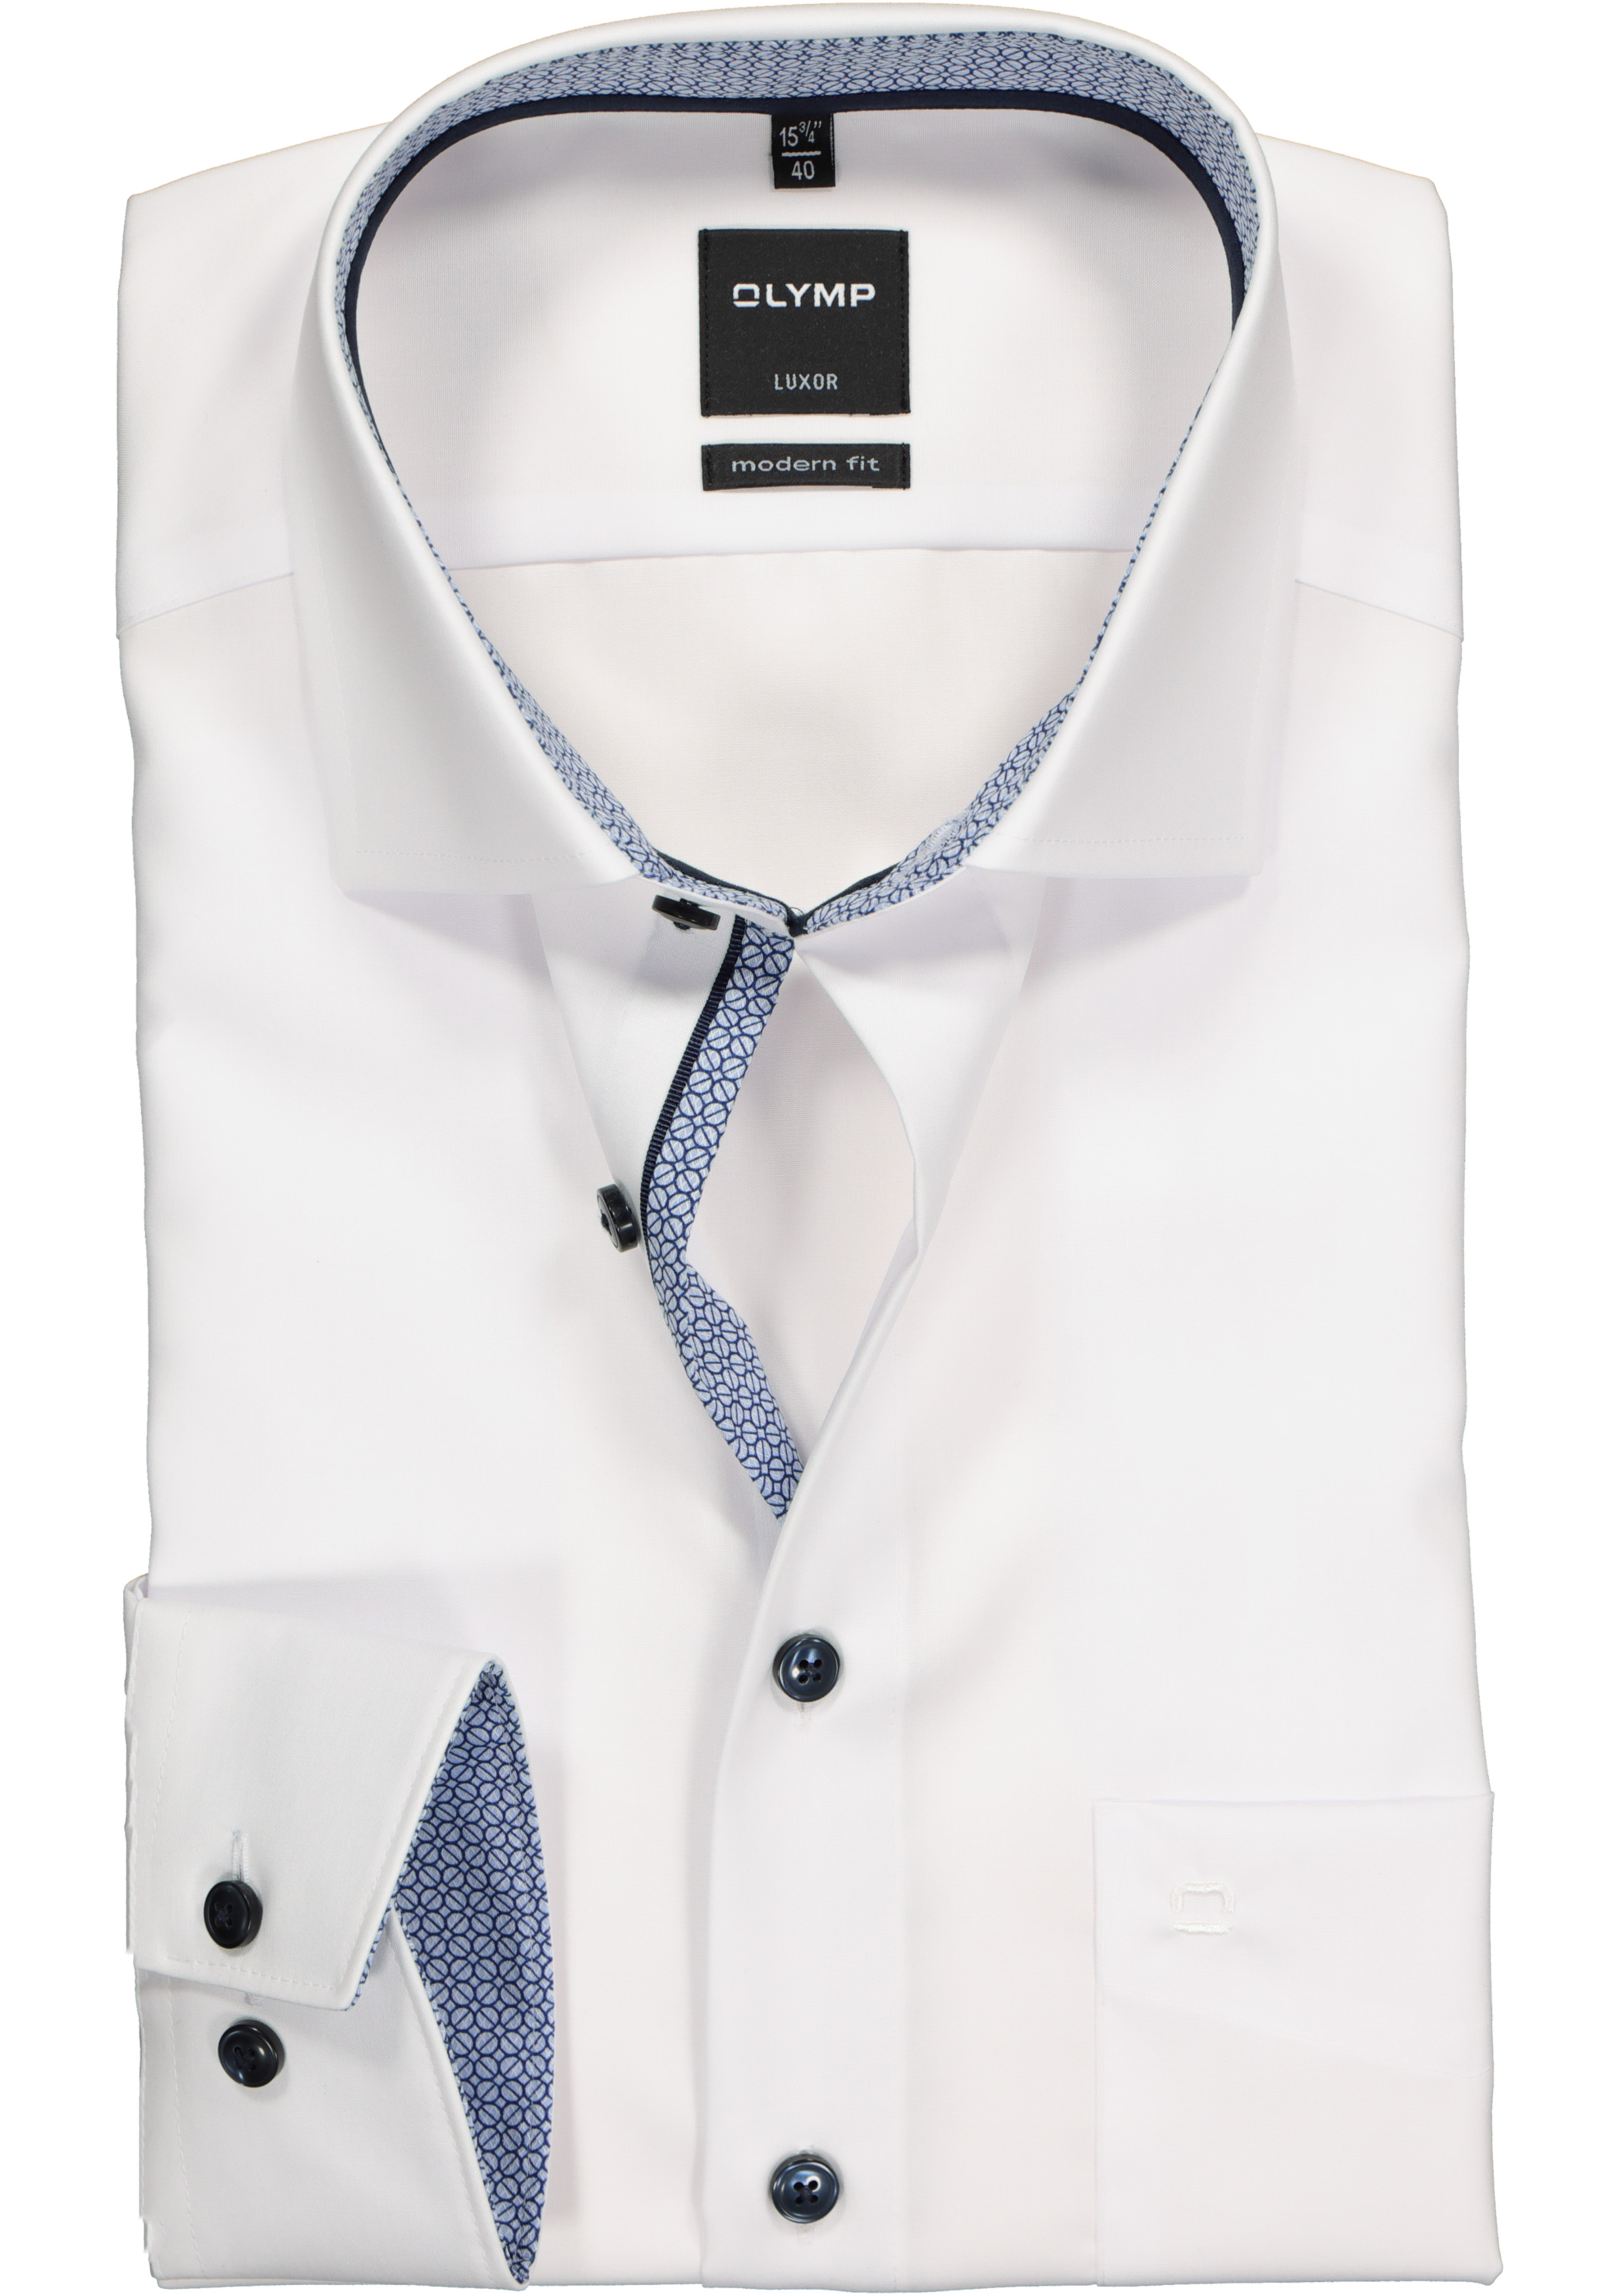 Aannemelijk Moderniseren sla OLYMP Luxor modern fit overhemd, mouwlengte 7, wit (contrast) - Shop de  nieuwste voorjaarsmode